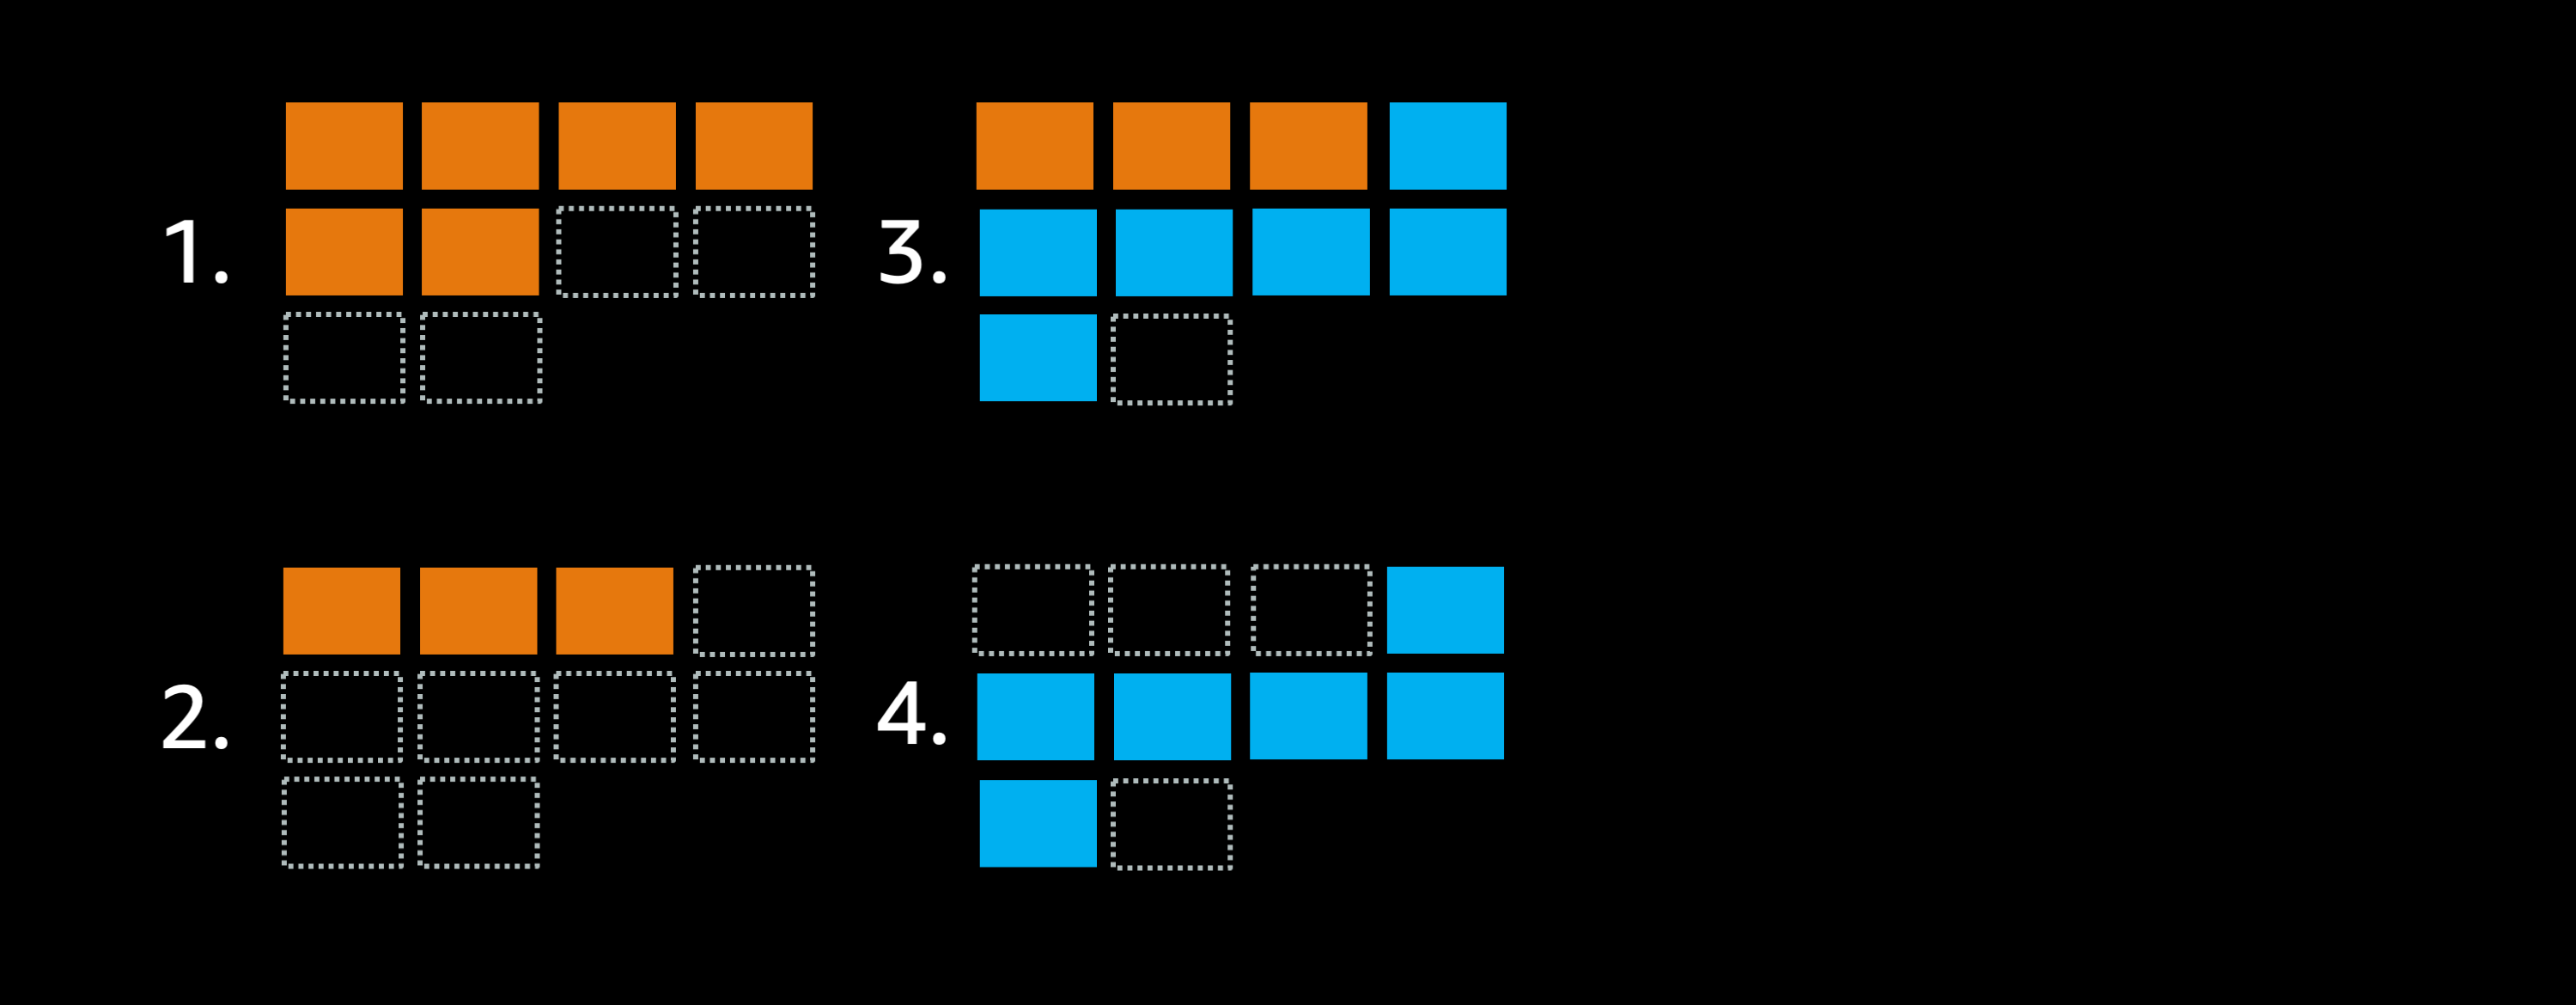 クラスタの最大配置可能タスク数を8から10に拡張し、minimumHealthyPercent = 50% に設定した場合